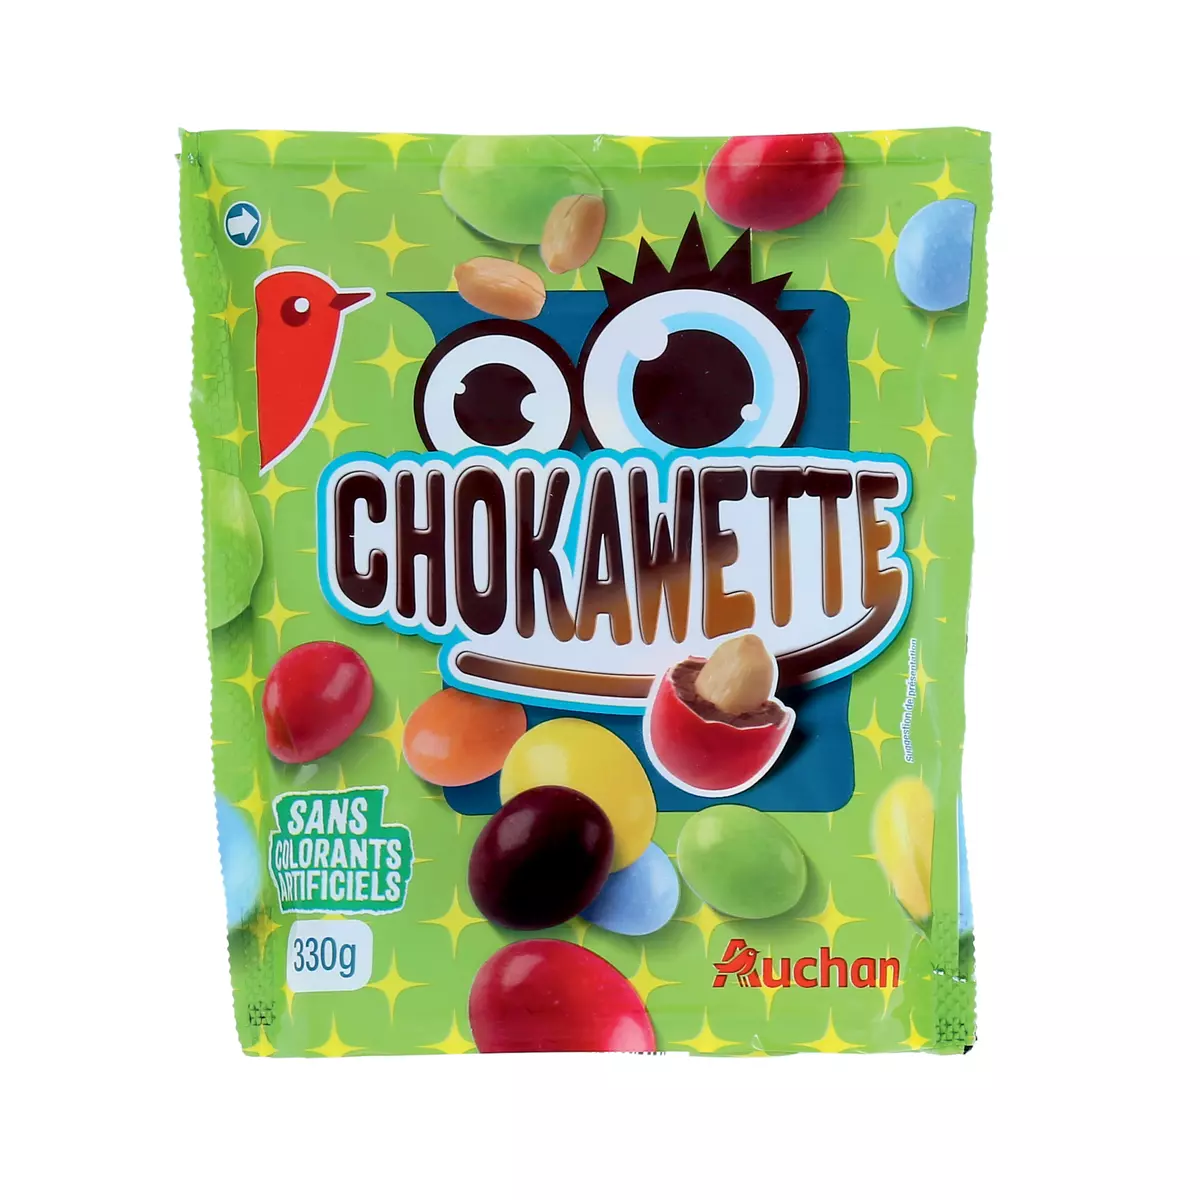 AUCHAN Chokawette bonbons chocolatés à la cacahuète sans colorants artificiels 330g